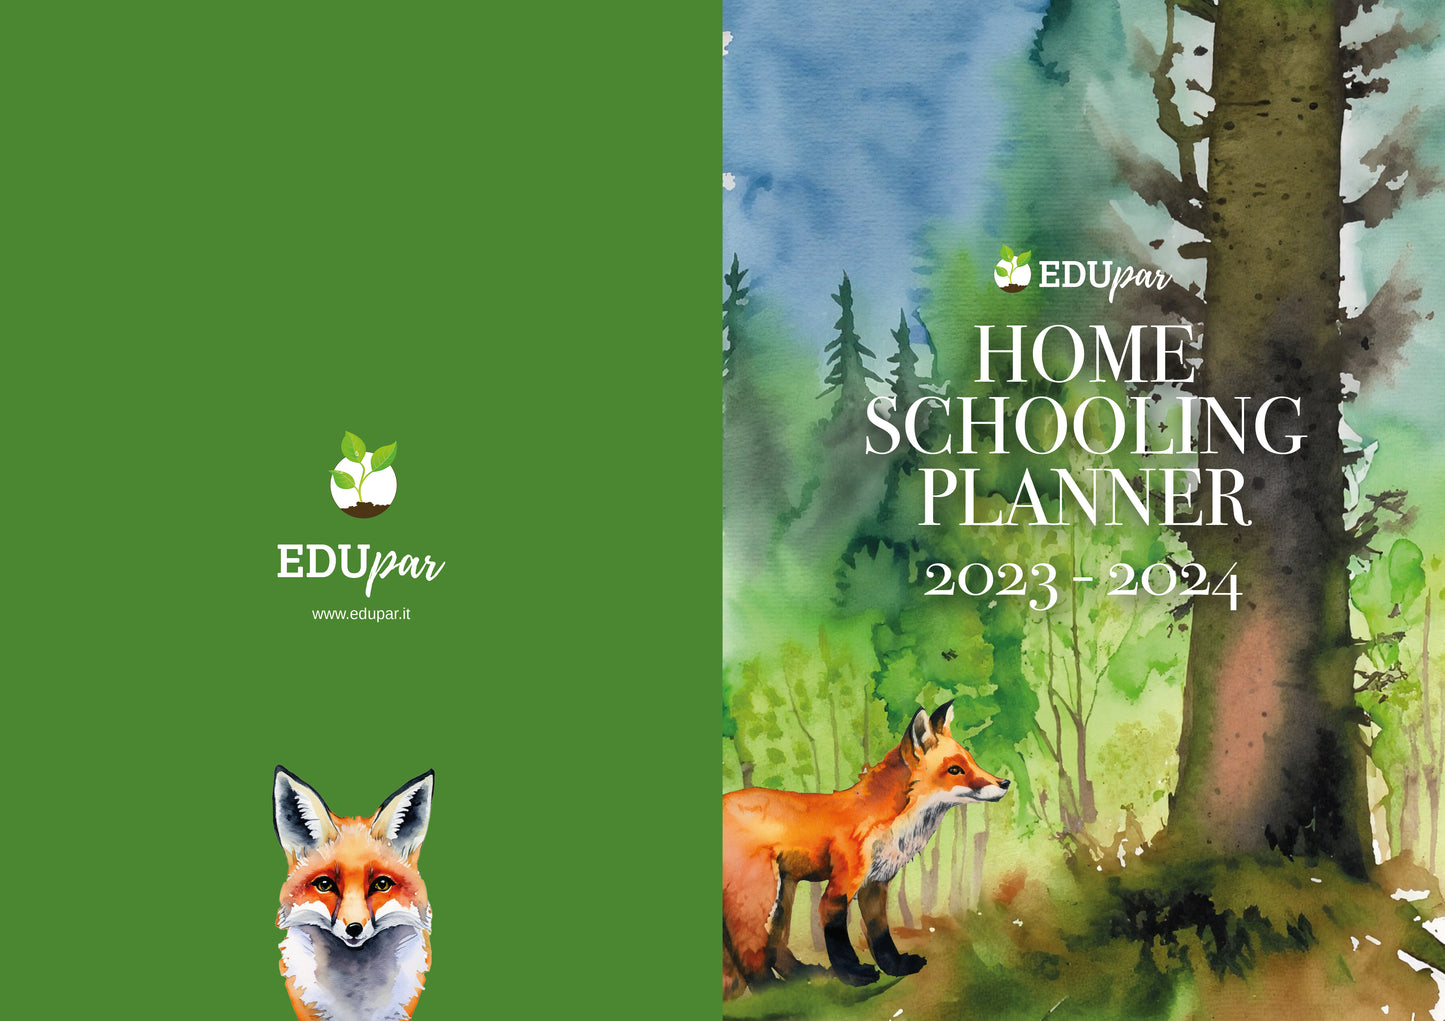 Agenda Planner Homeschooling 2023 - 2024